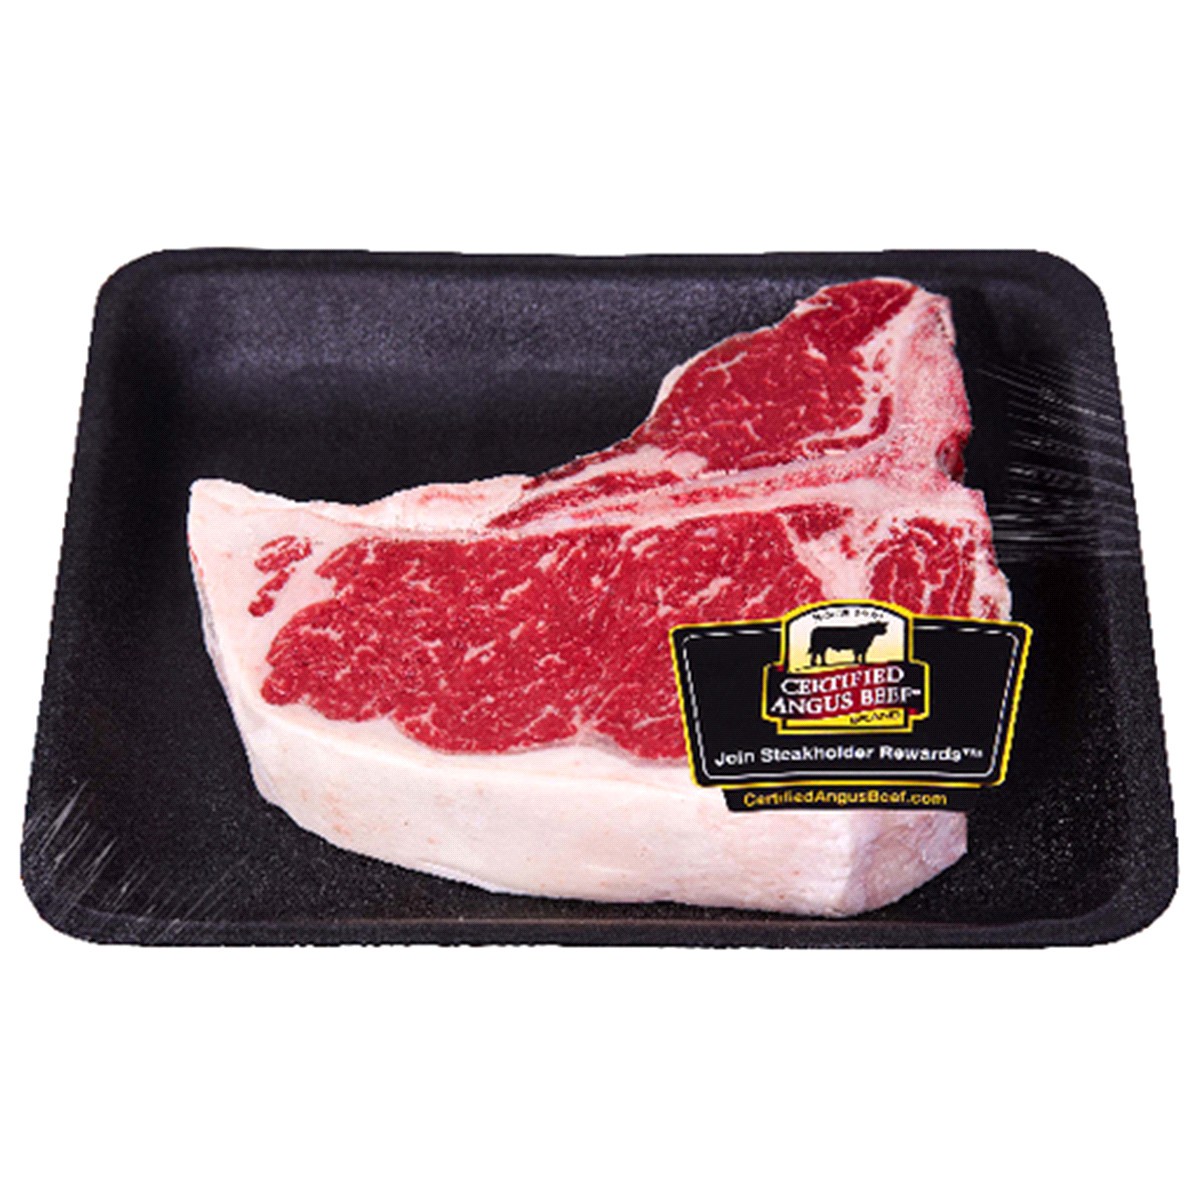 slide 1 of 1, FRESH FROM MEIJER Certified Angus Beef Loin T-Bone Steak, Fresh., per lb